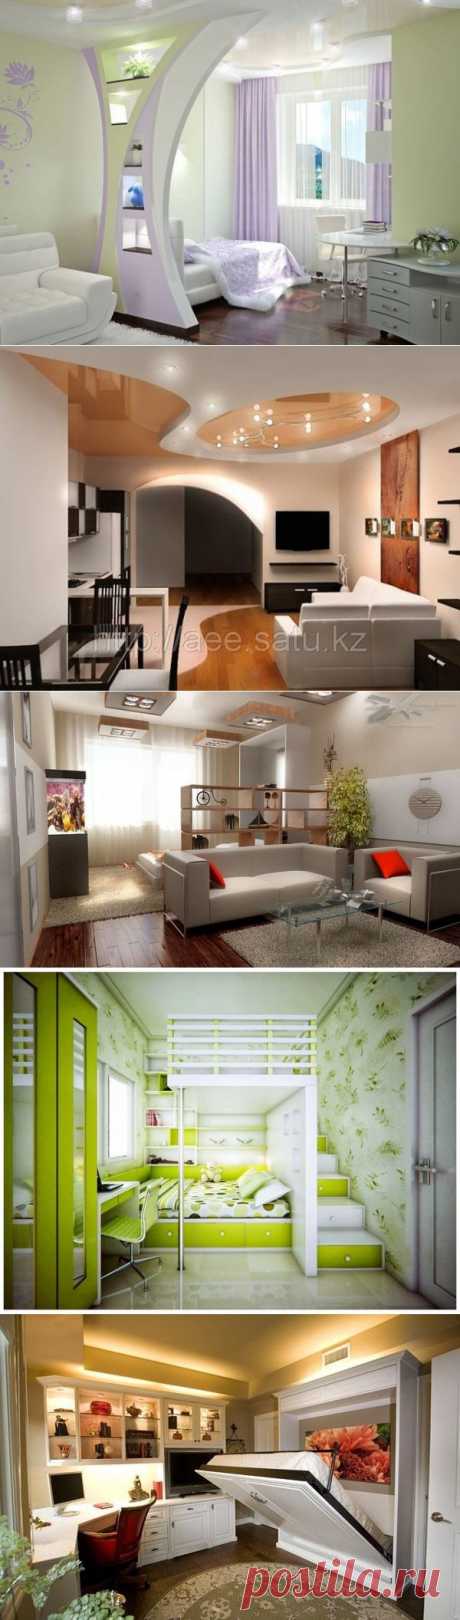 Идеи дизайна для маленьких квартир | Школа Ремонта